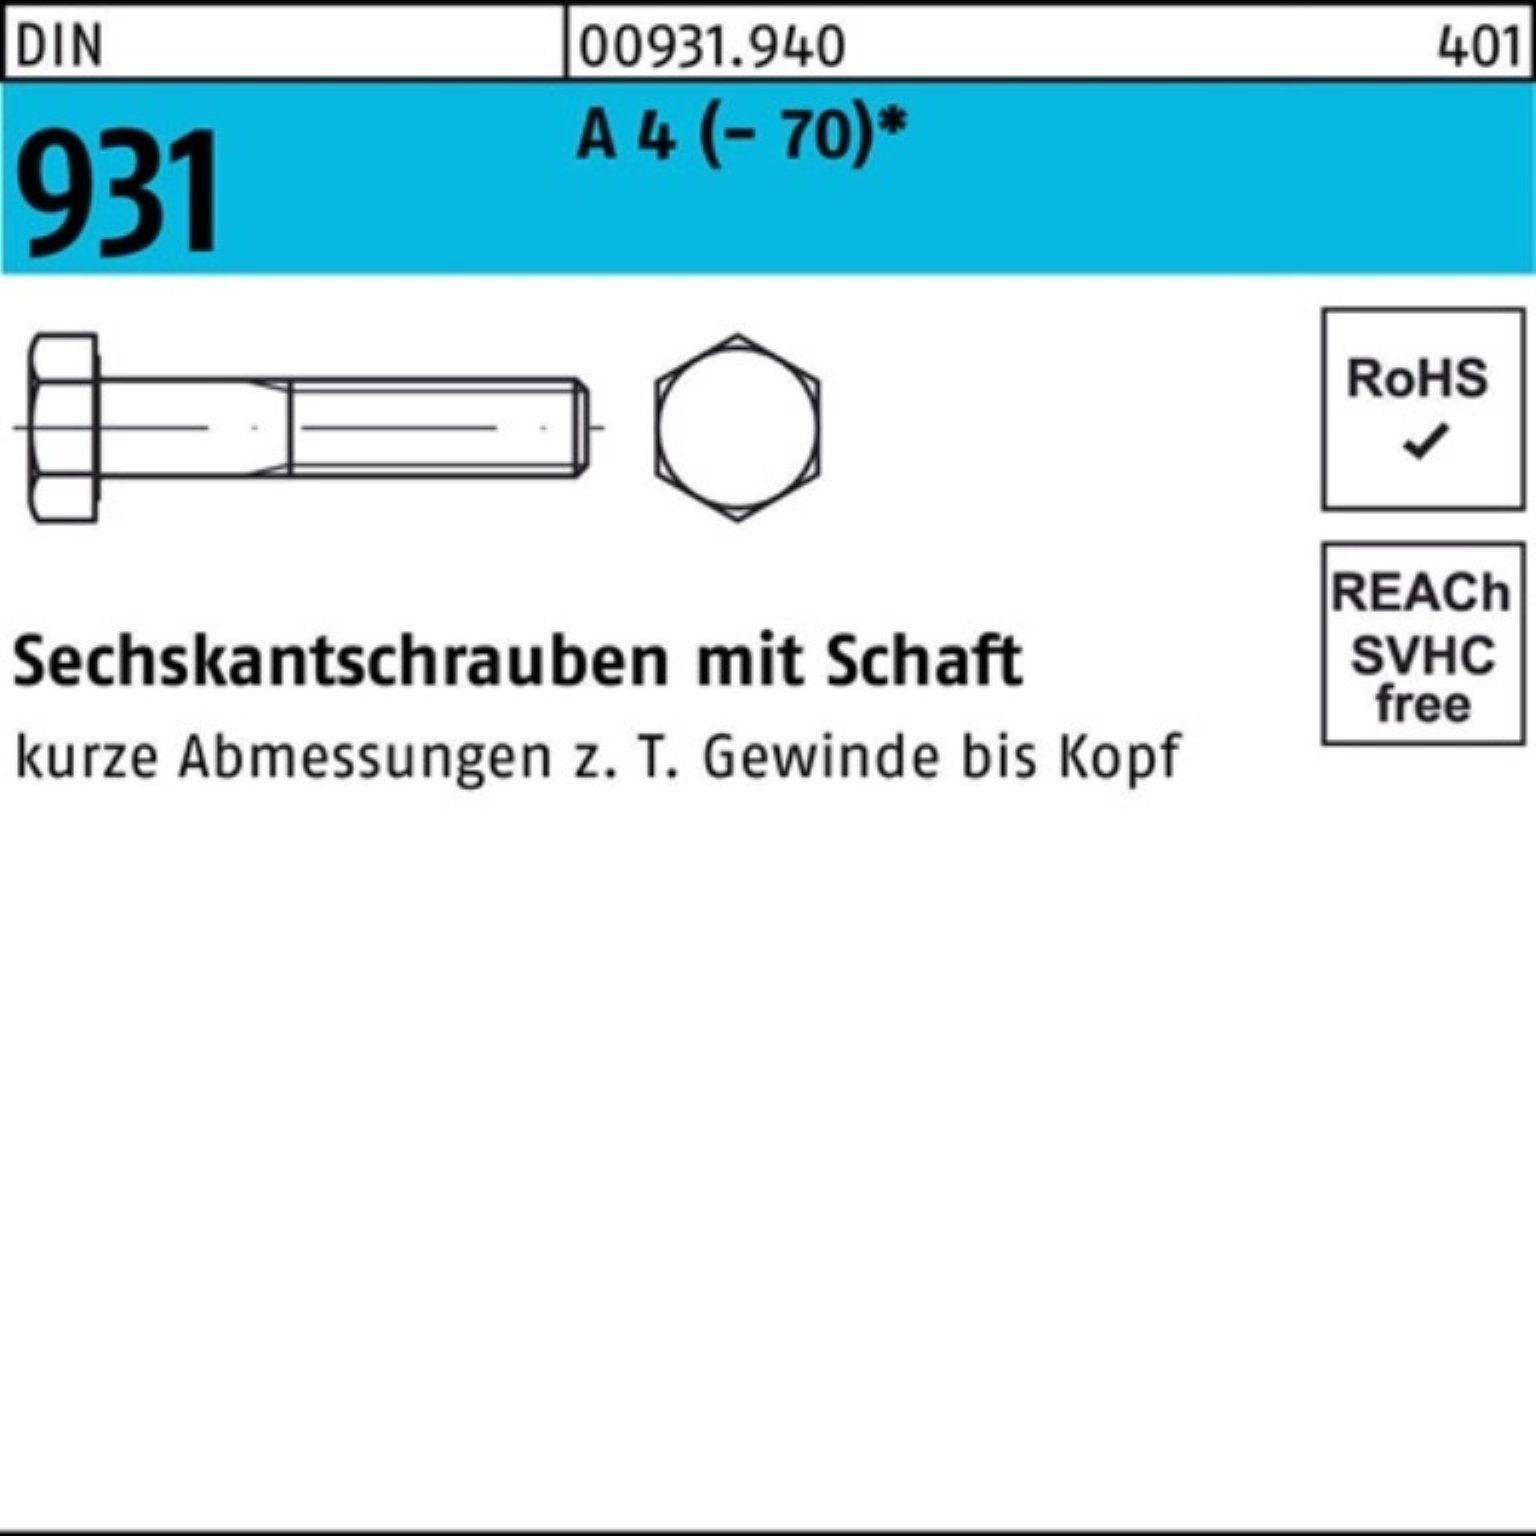 Reyher Sechskantschraube Schaft 4 (70) Pack M16x 50 DIN Stü Sechskantschraube 931 55 A 100er